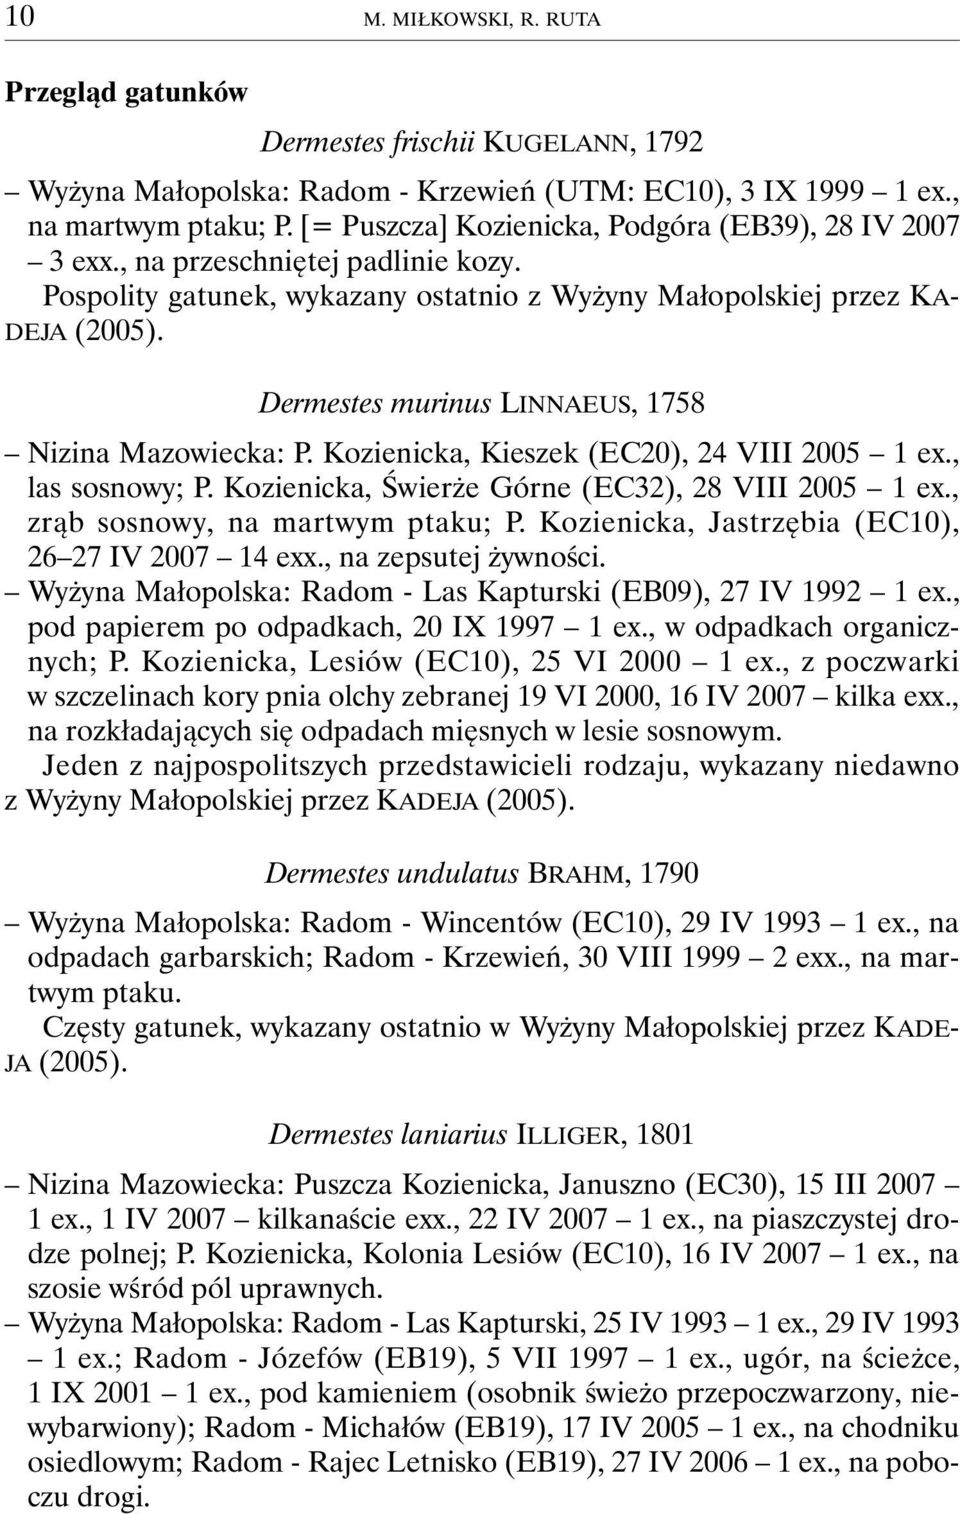 Dermestes murinus LINNAEUS, 1758 Nizina Mazowiecka: P. Kozienicka, Kieszek (EC20), 24 VIII 2005 1 ex., las sosnowy; P. Kozienicka, Świerże Górne (EC32), 28 VIII 2005 1 ex.